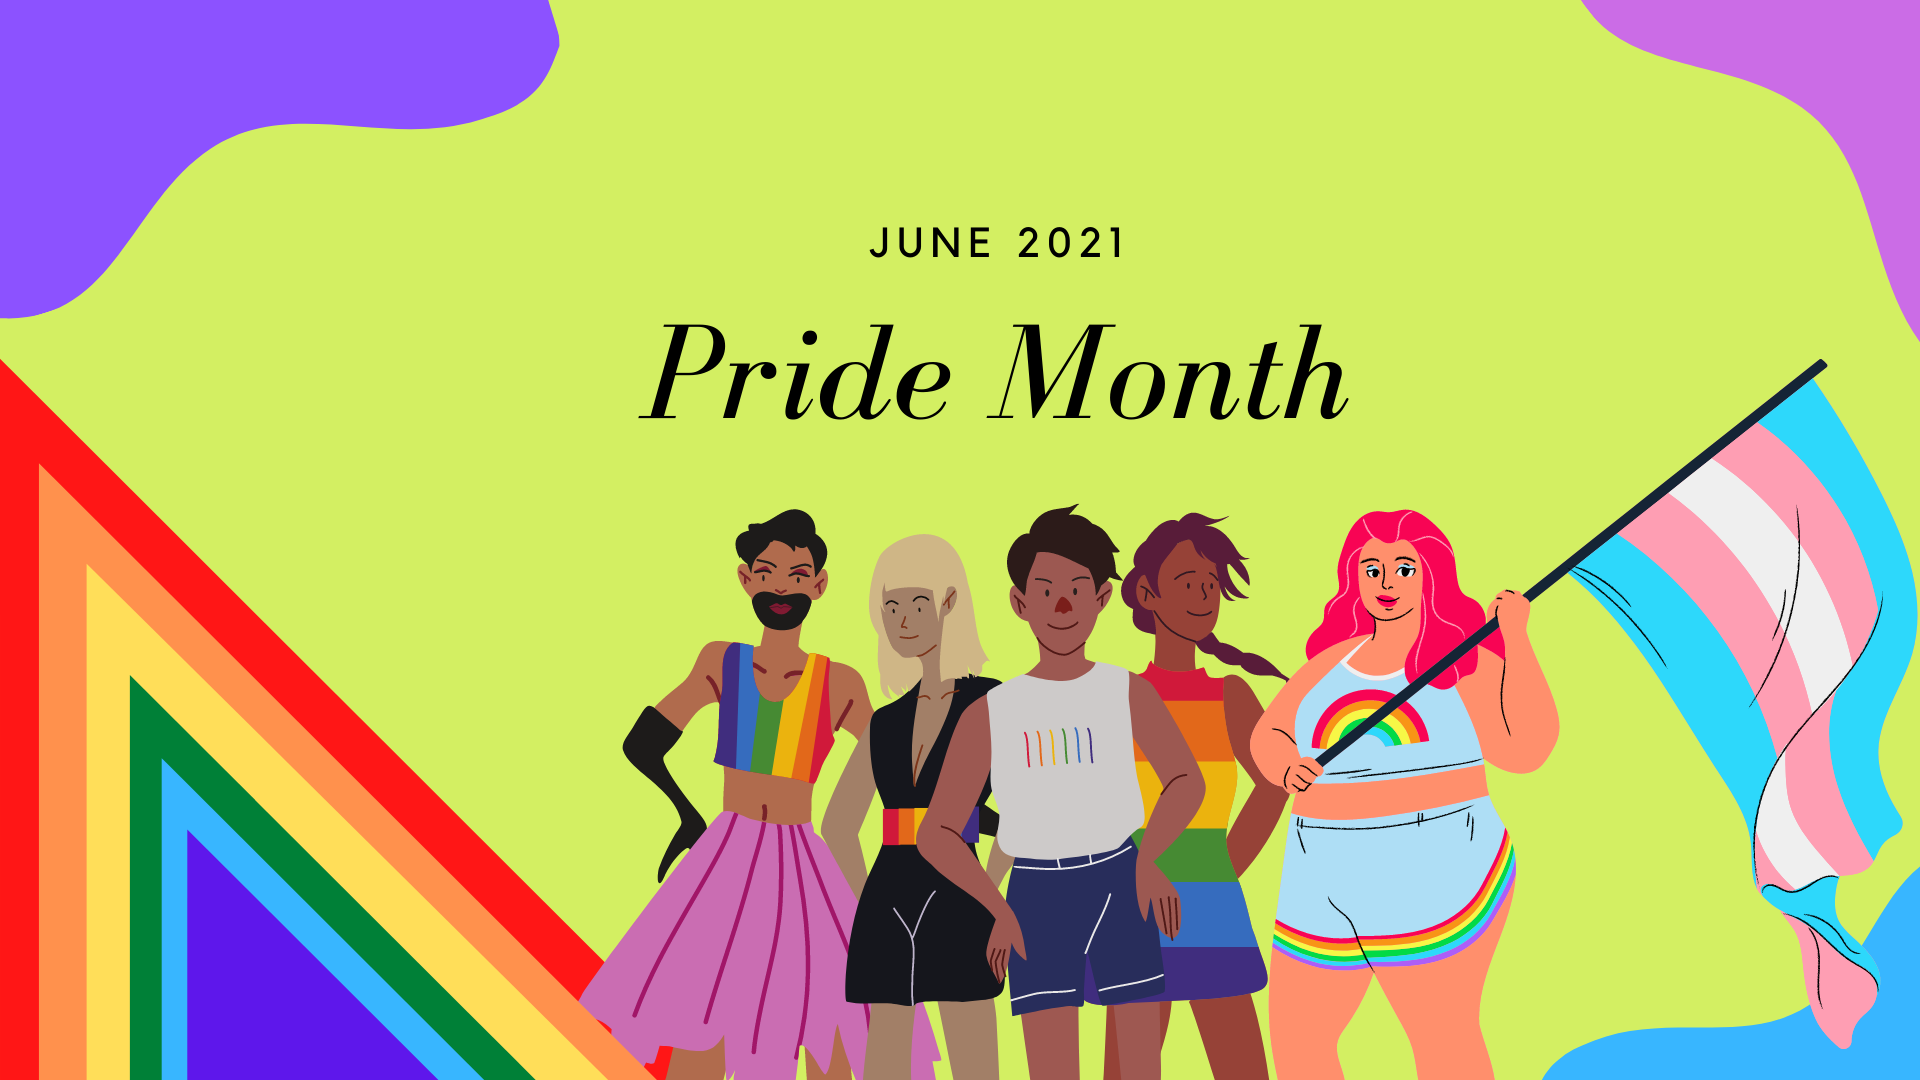 is gay pride month june or october